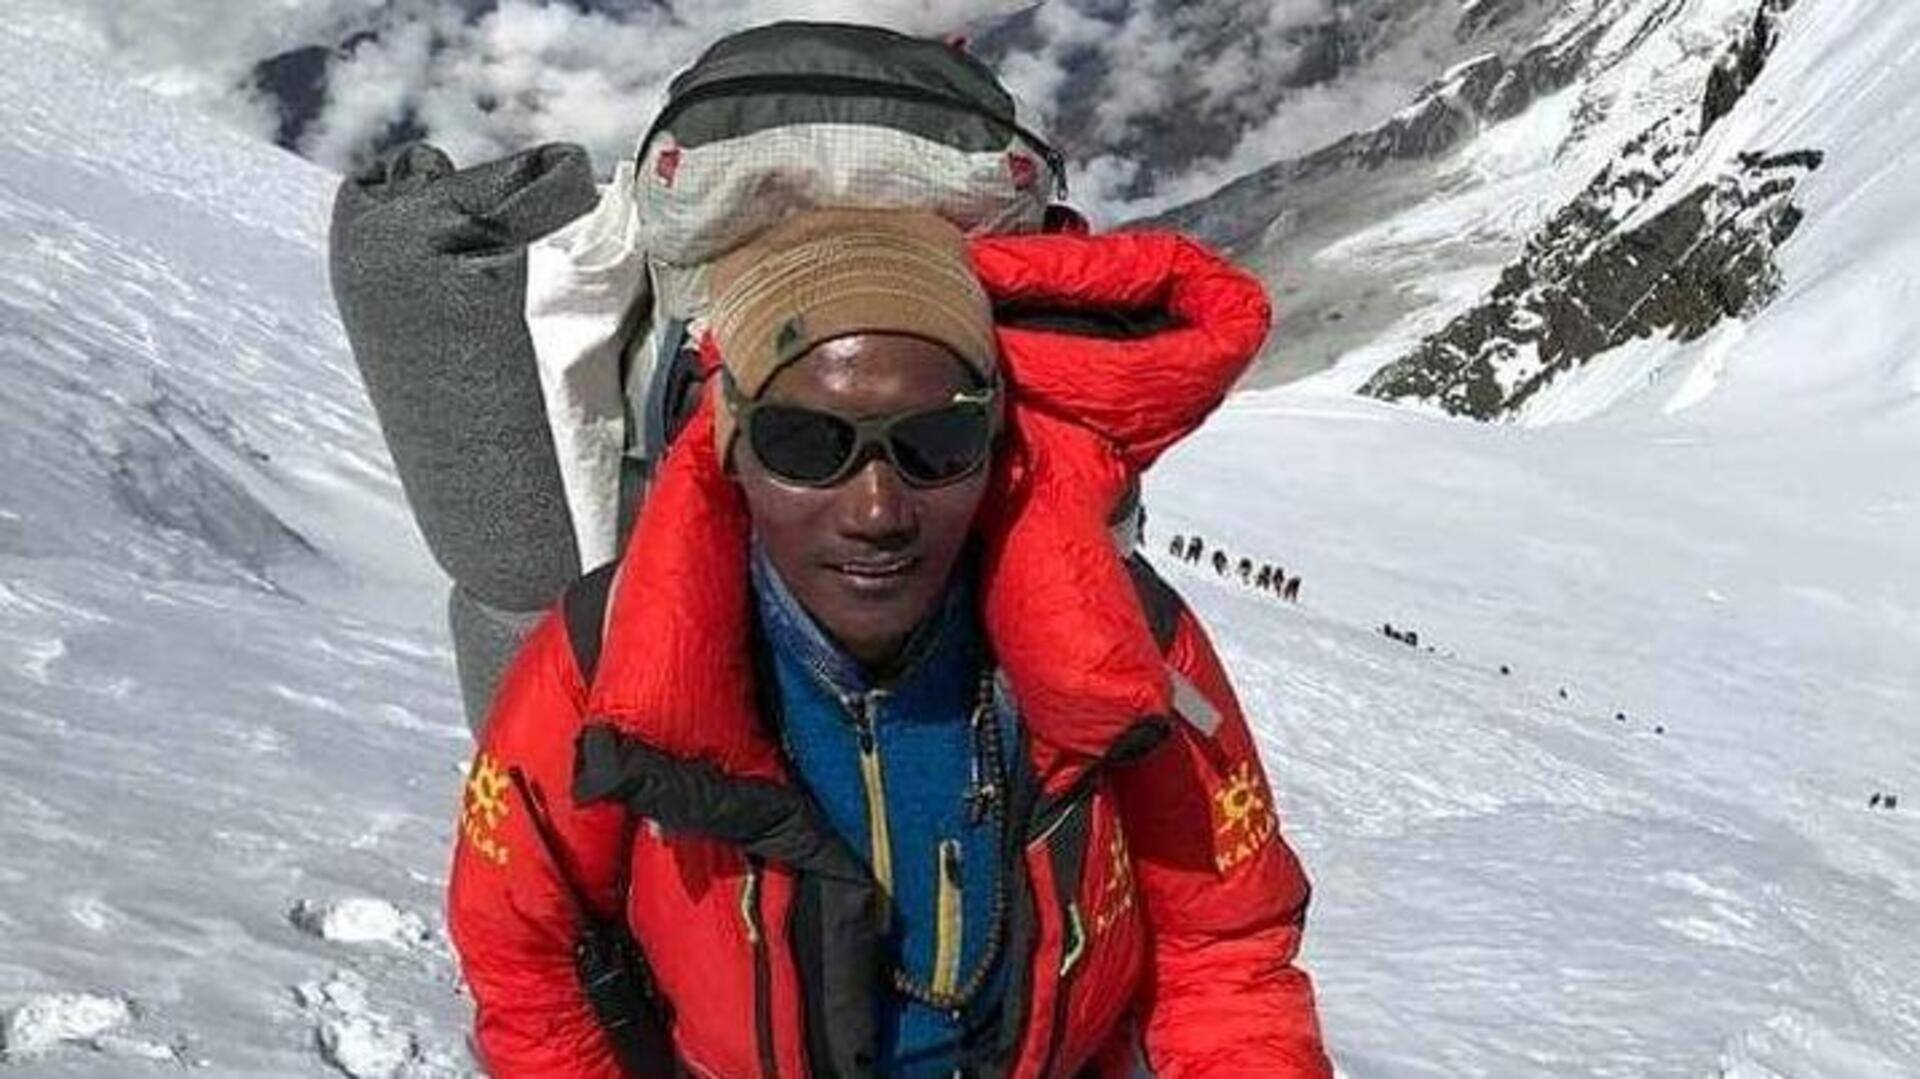 नेपाली के 'एवरेस्ट मैन' कामी शेरपा ने रिकॉर्ड 27वीं बार फतह की माउंट एवरेस्ट की चोटी